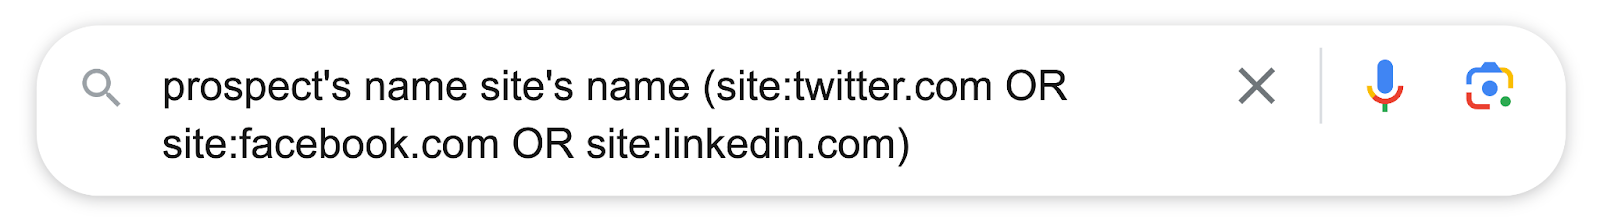 prospect’s name site’s name (site: twitter.com OR site:facebook.com OR site:linkedin.com)